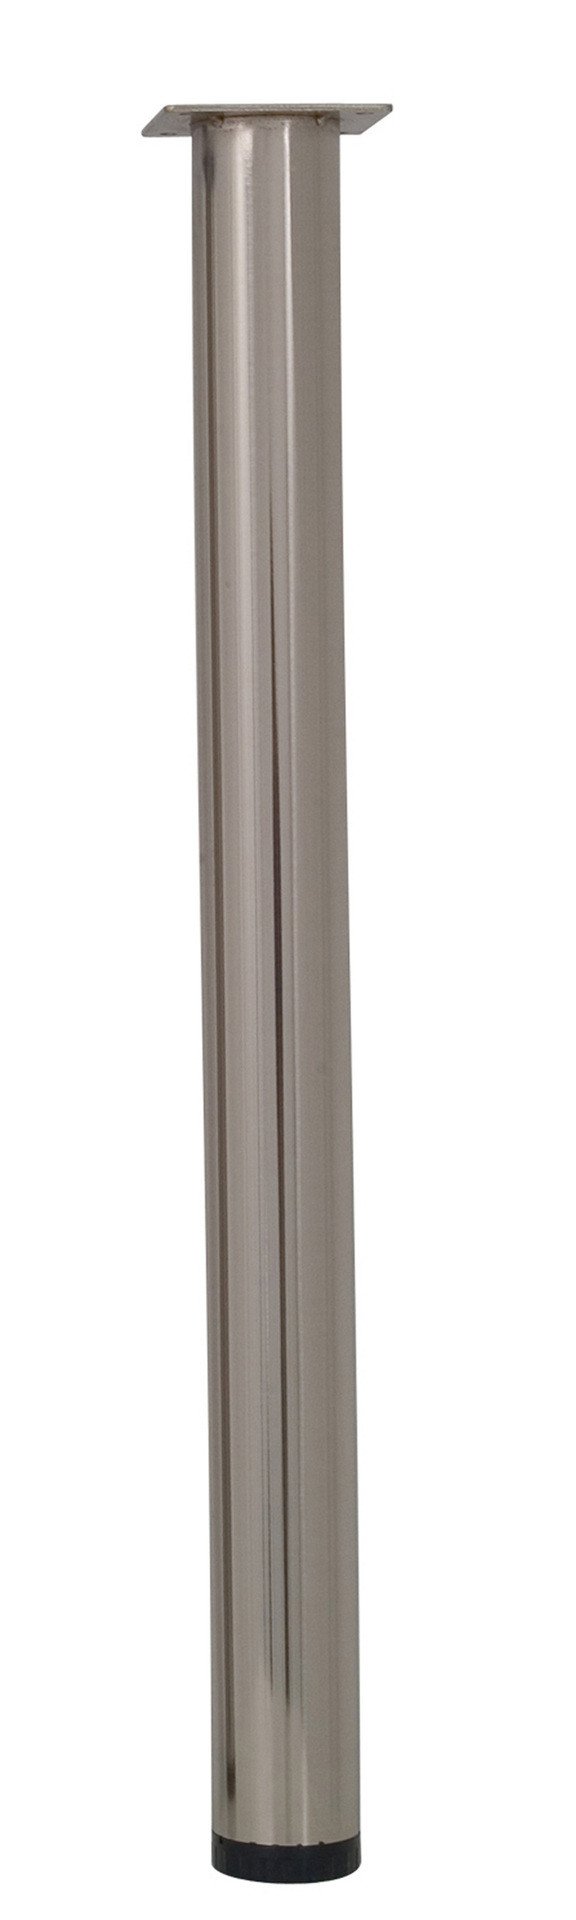 Pied de table cylindrique réglable acier brossé gris, de 70 à 73 cm